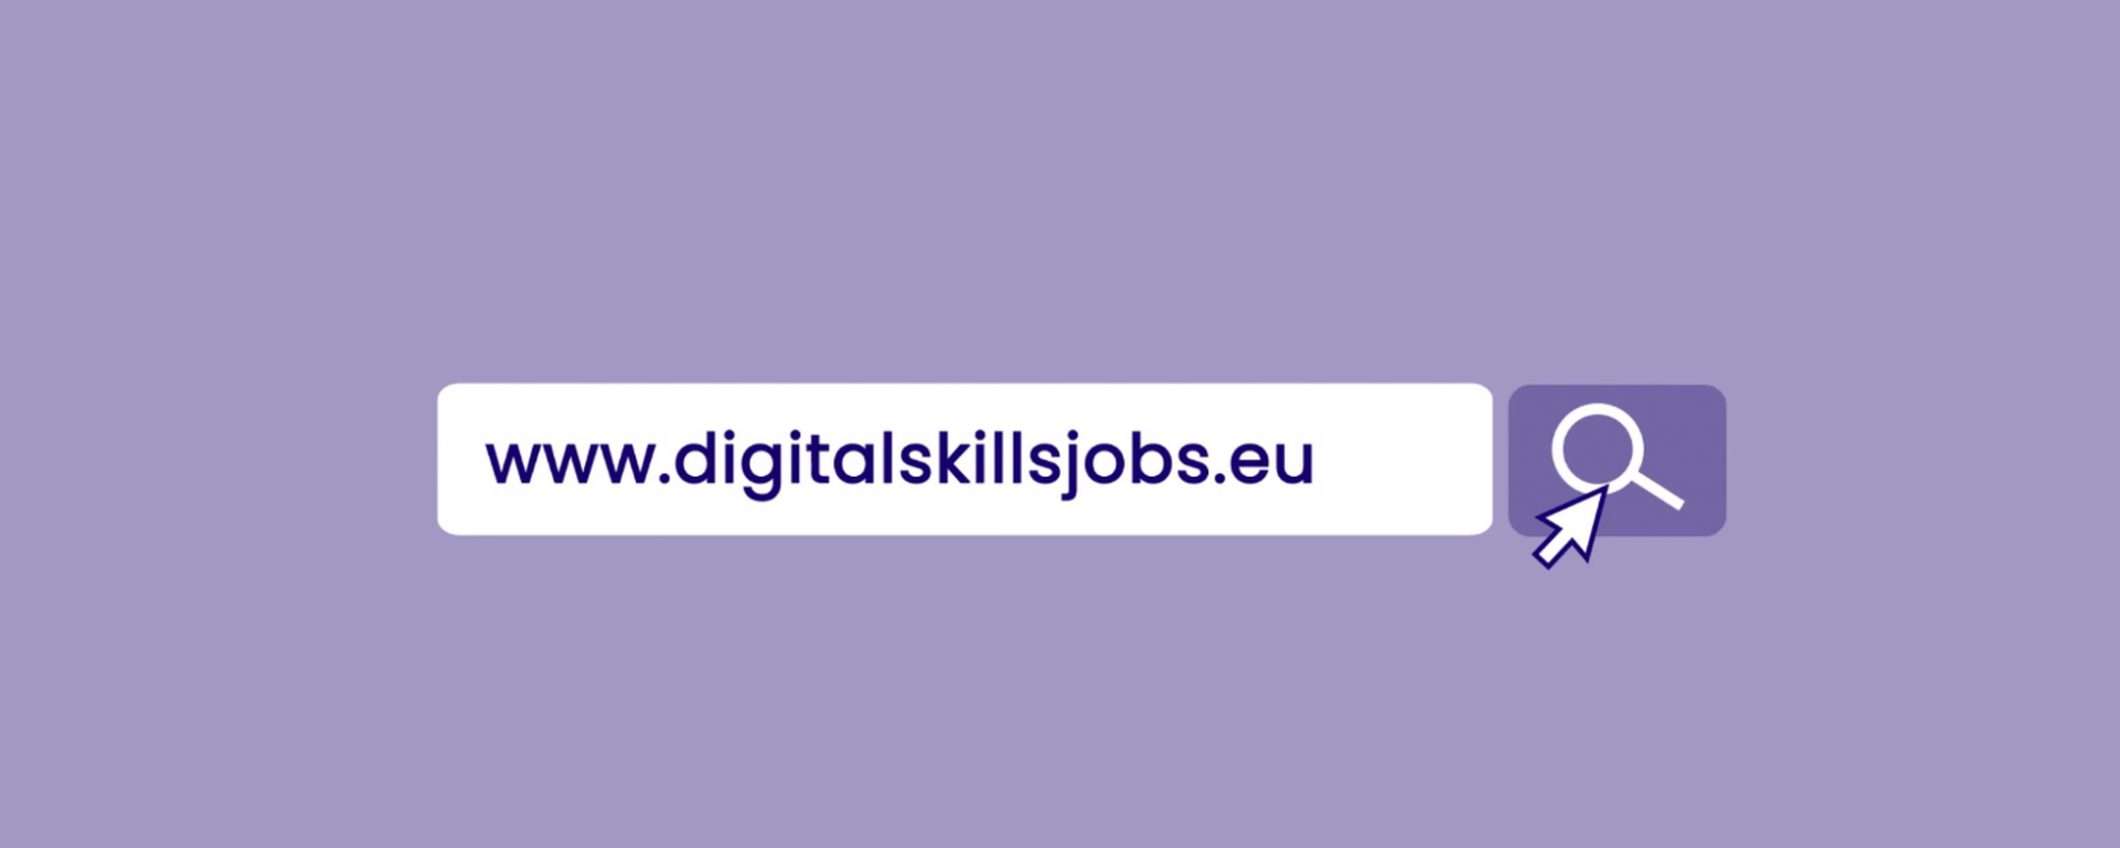 Online la piattaforma UE per competenze digitali